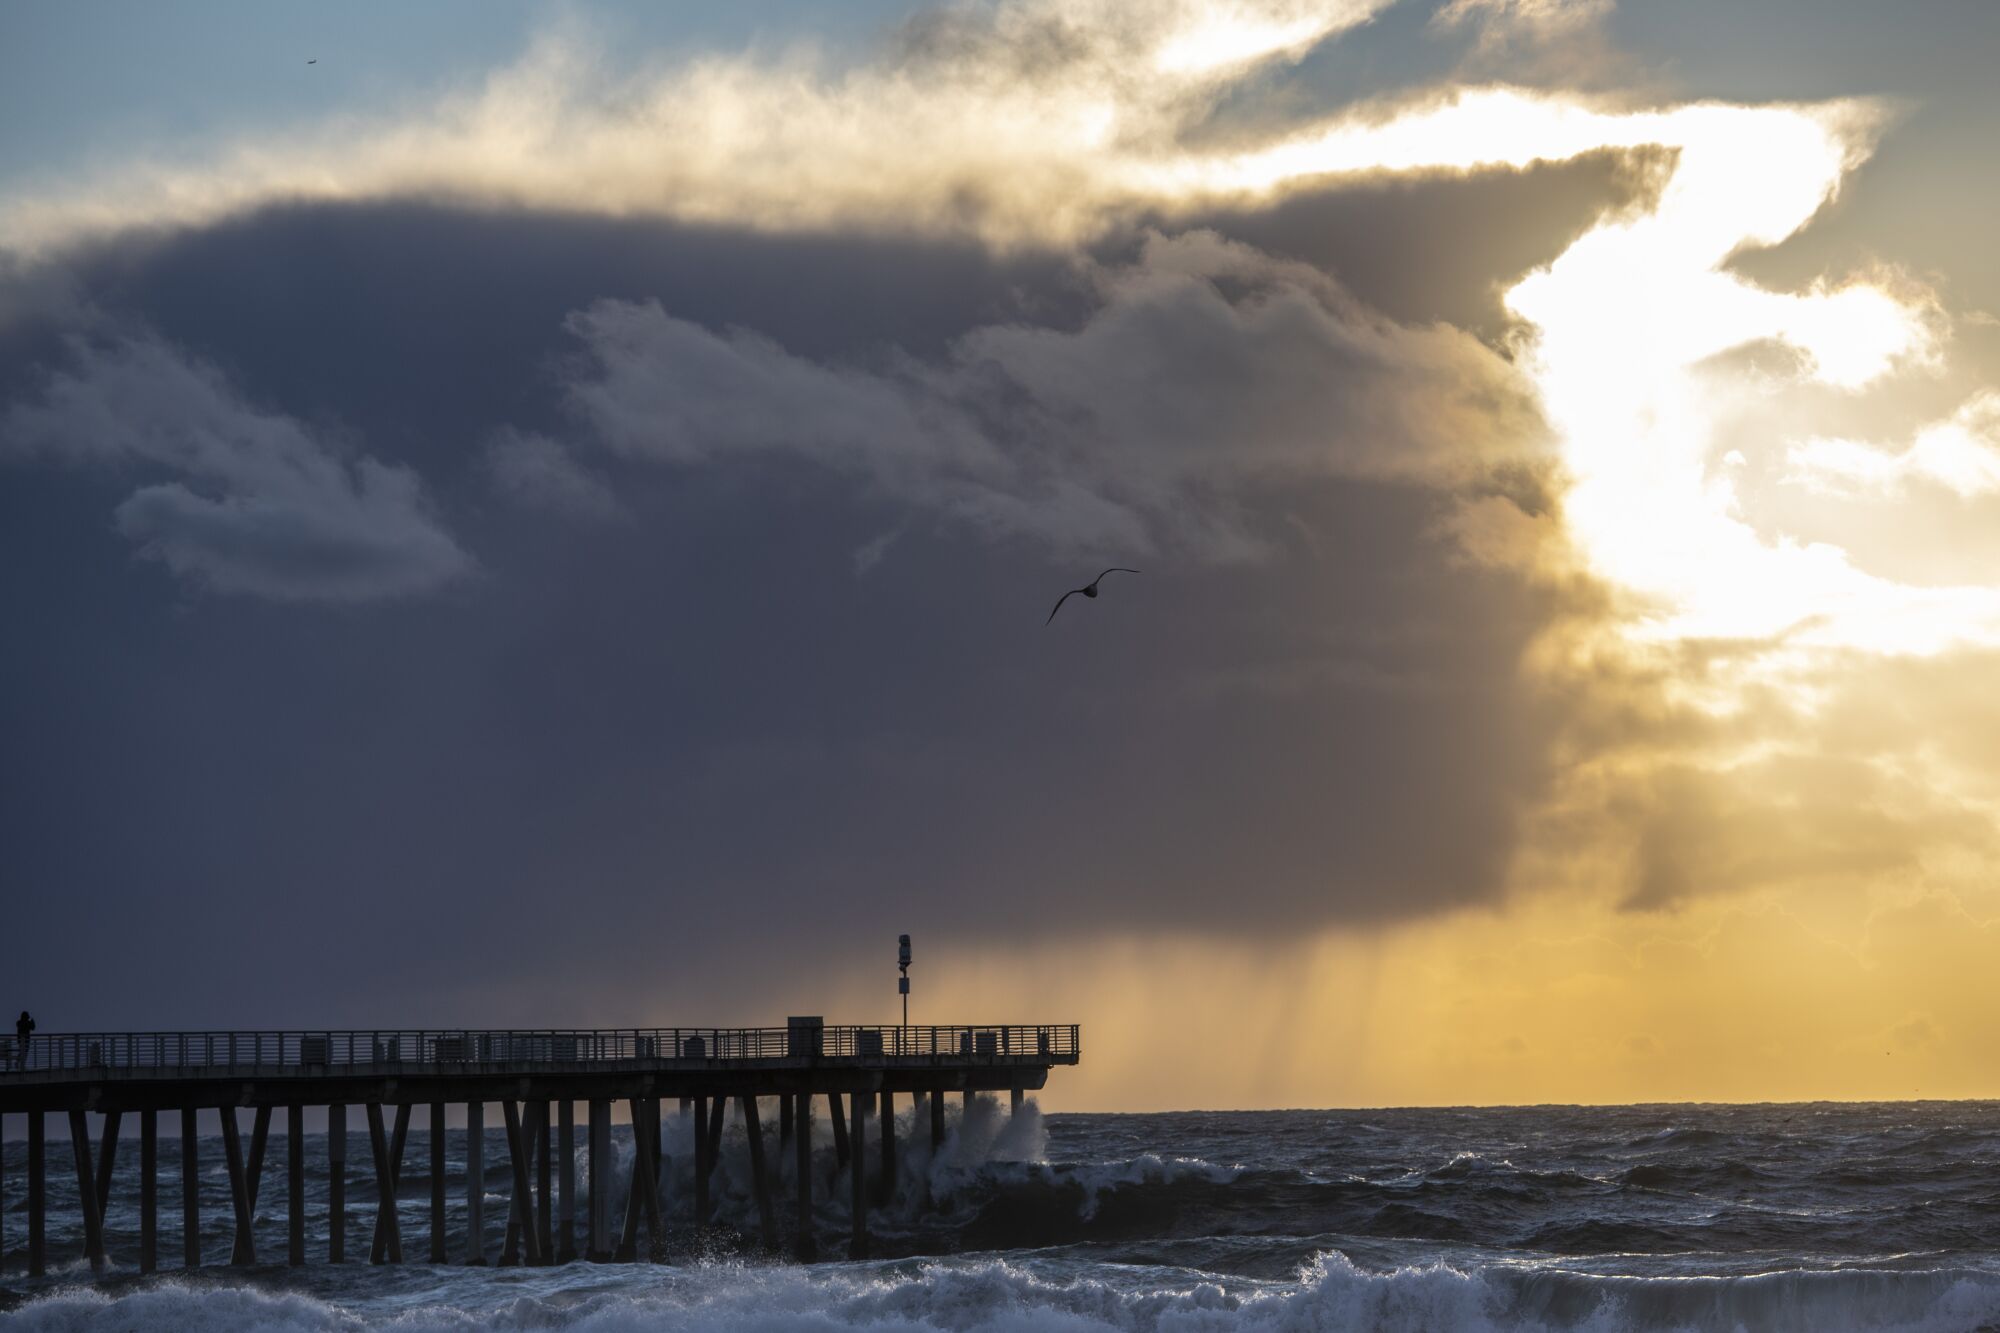 A pier is silhouetted against a dark cloud dropping rain onto an ocean